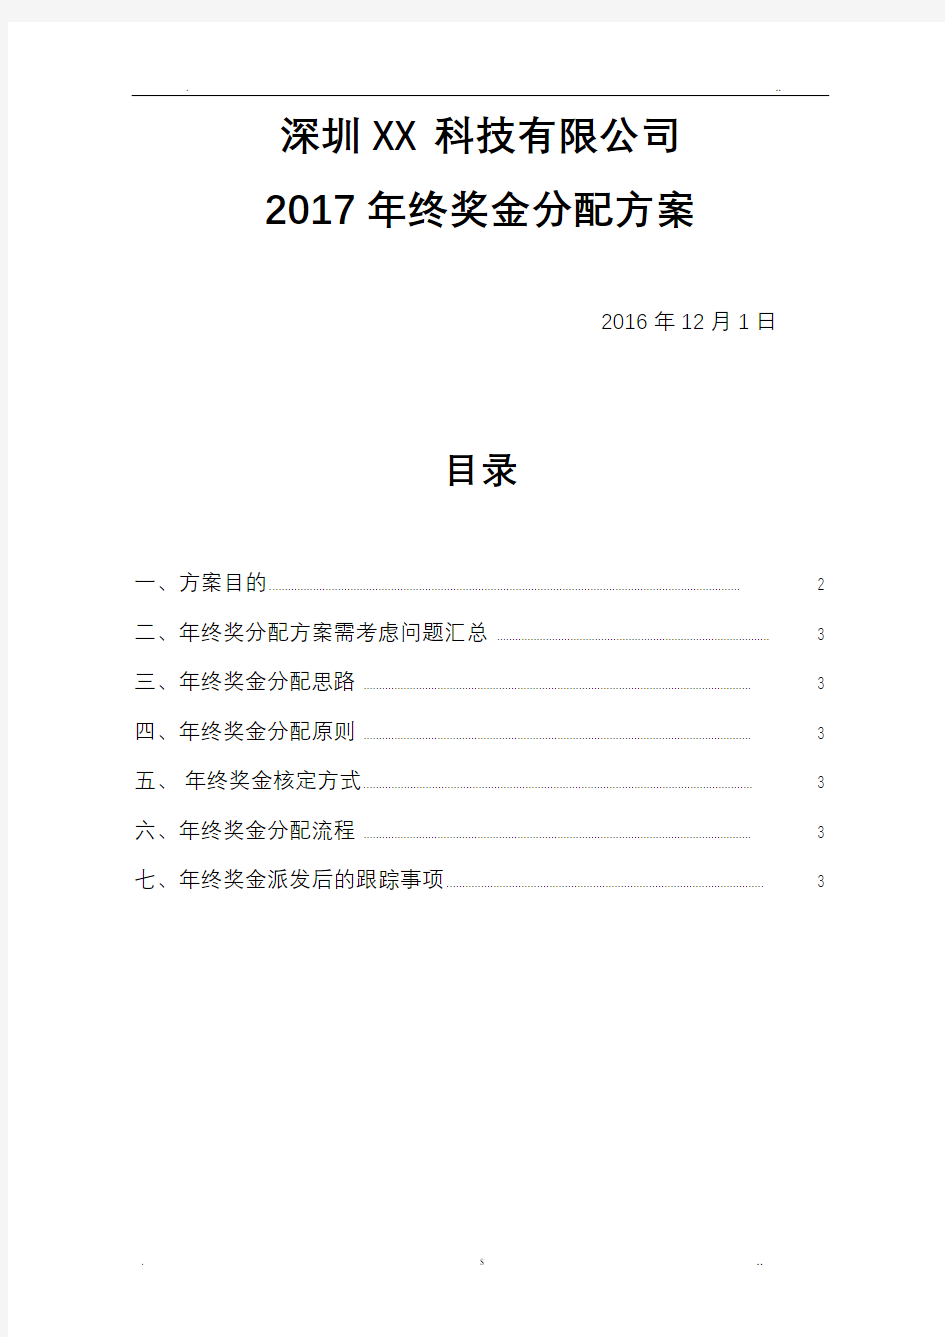 2017年年终奖金分配方案(落实详细版)